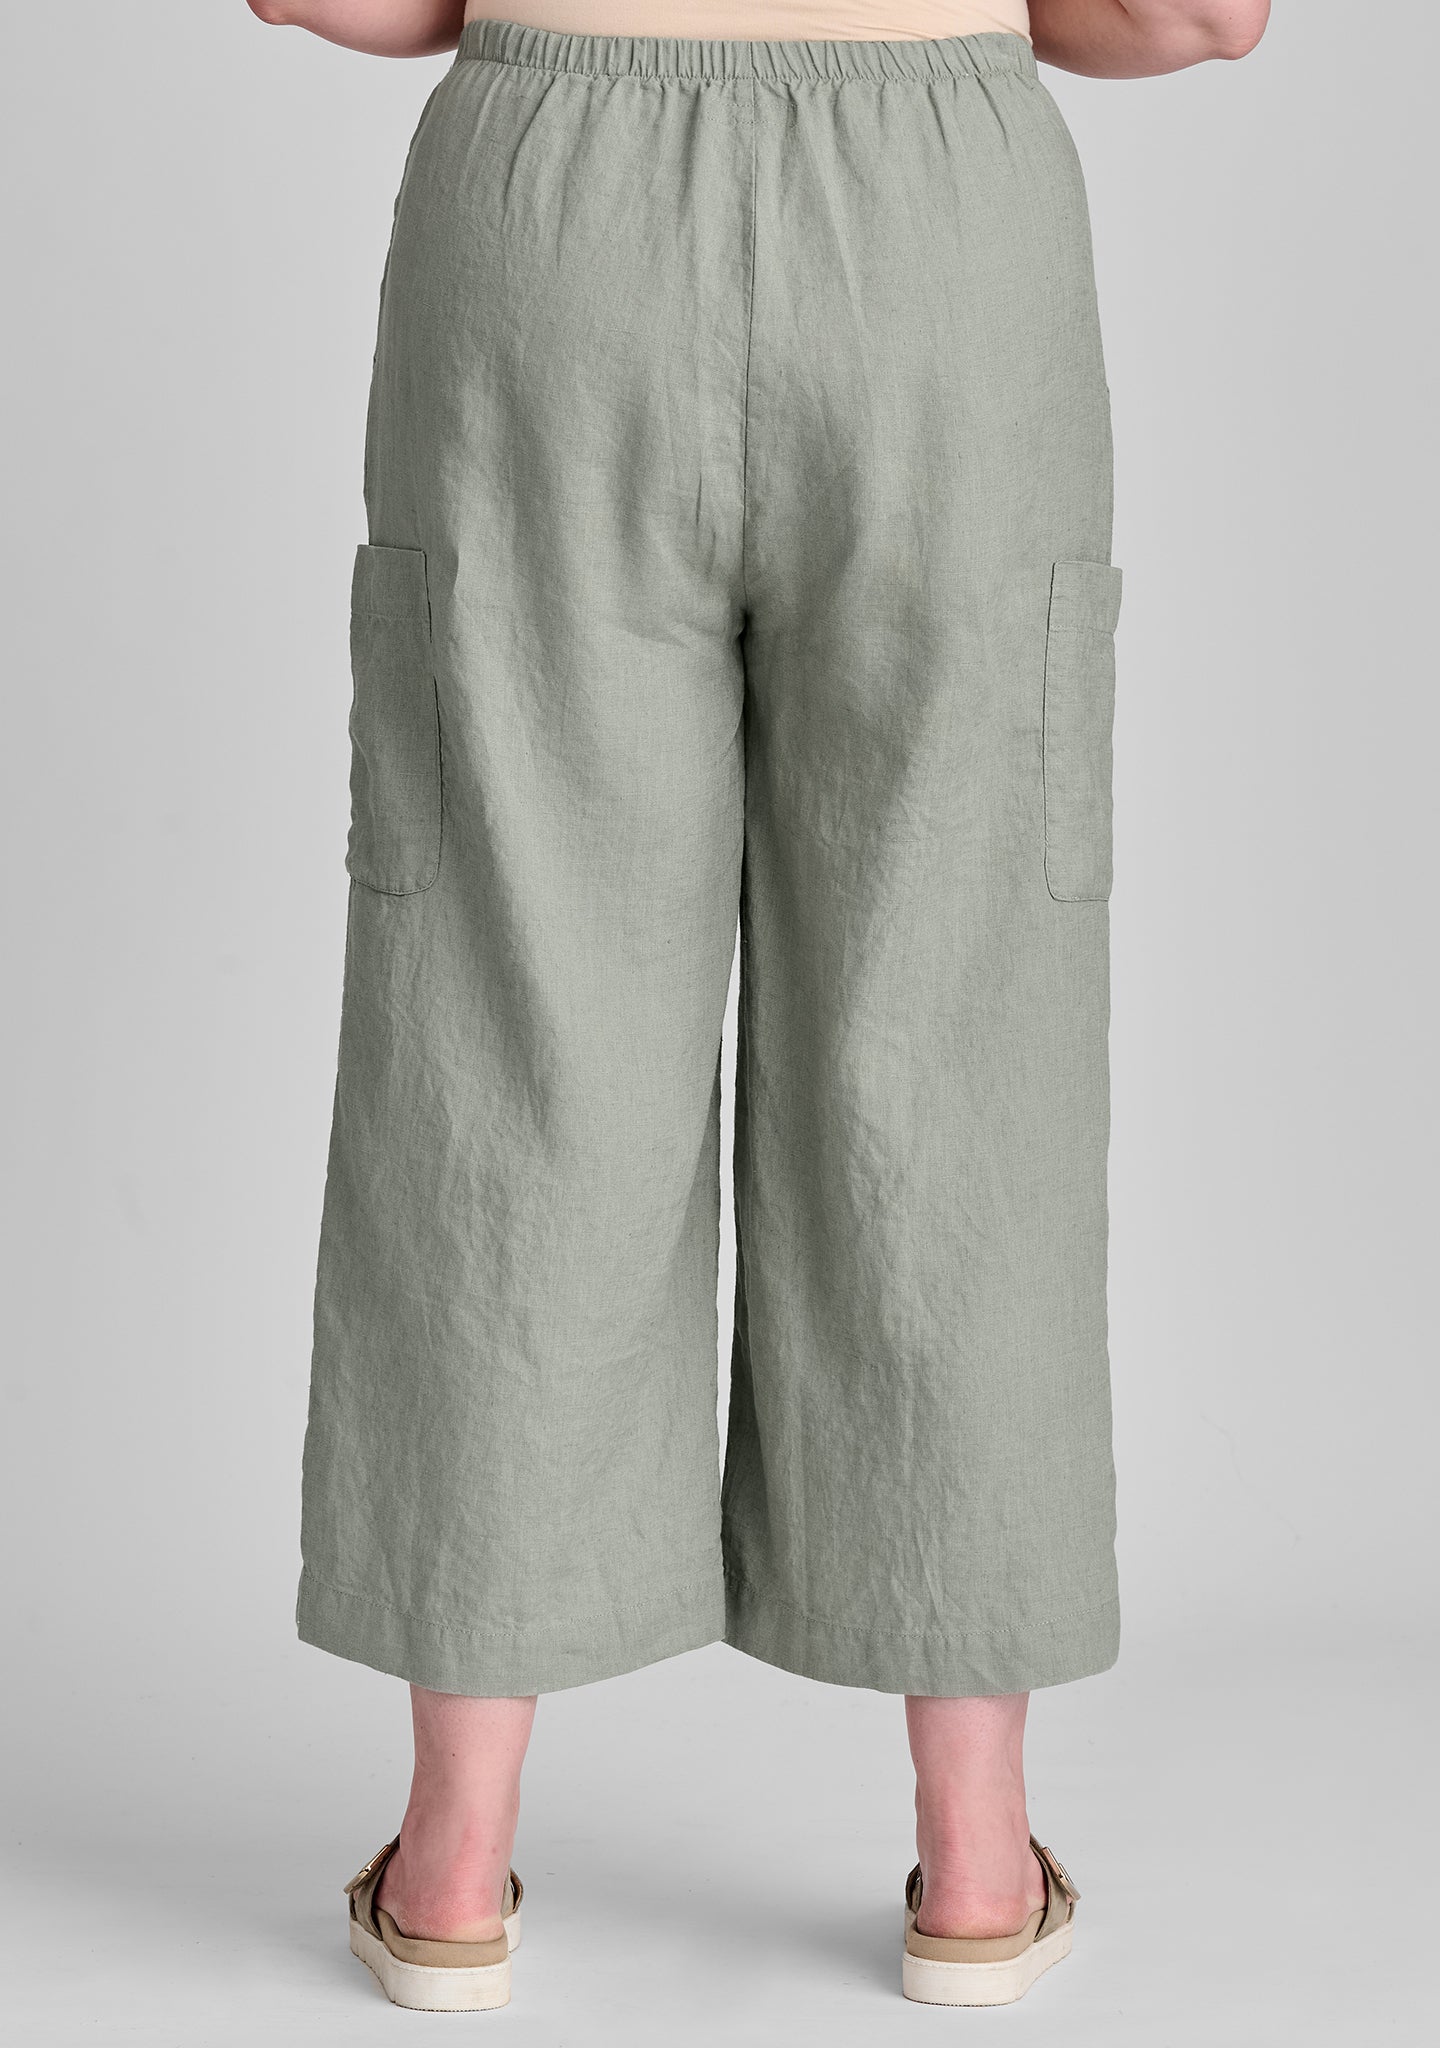 modern flood linen pants with elastic waist details